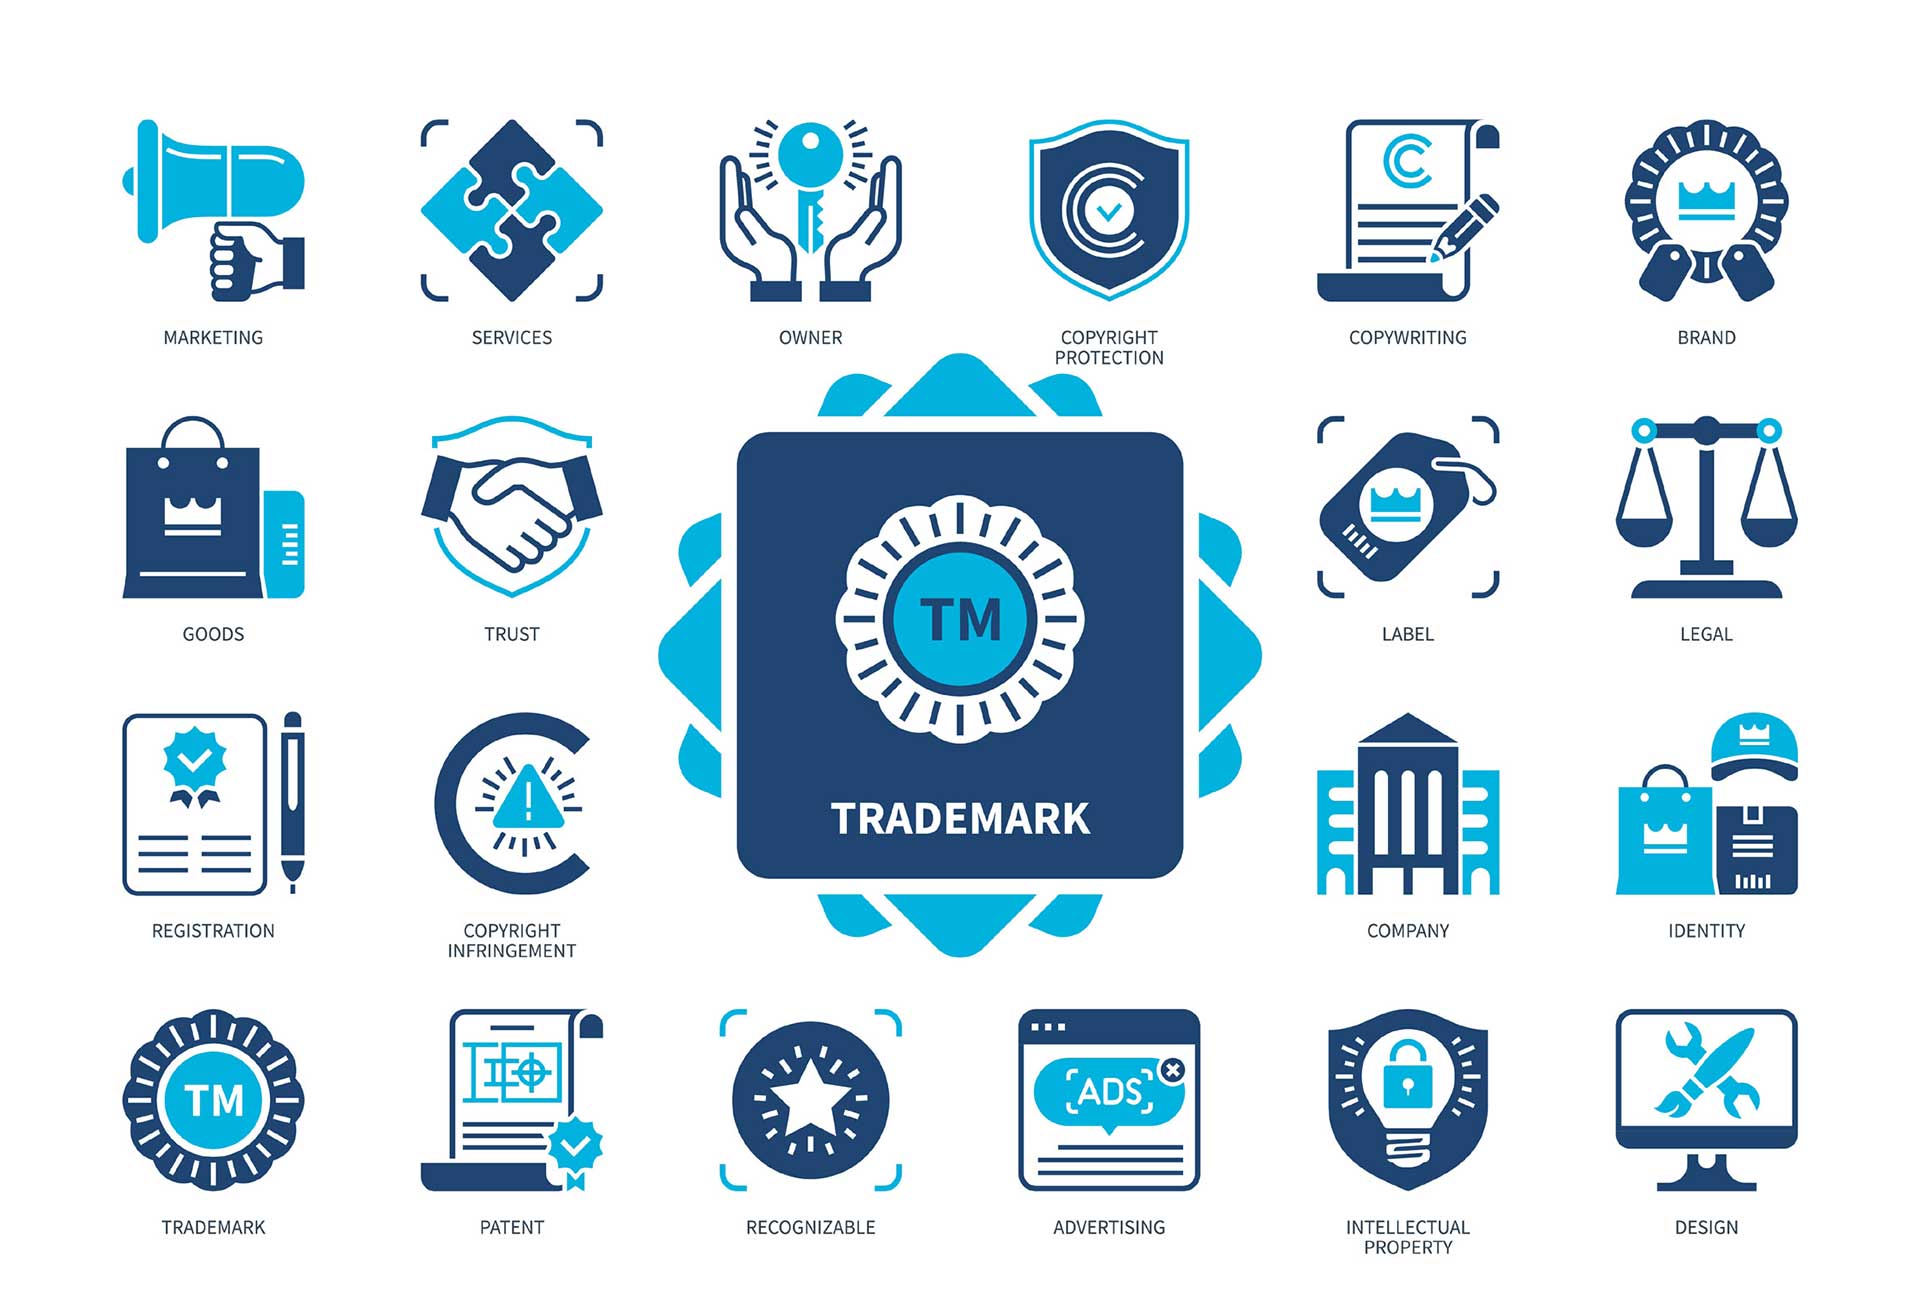 En samling blå ikoner relatert til varemerke, samlet rundt et stort ikon som viser «trademark» i midten, digital illustrasjon.